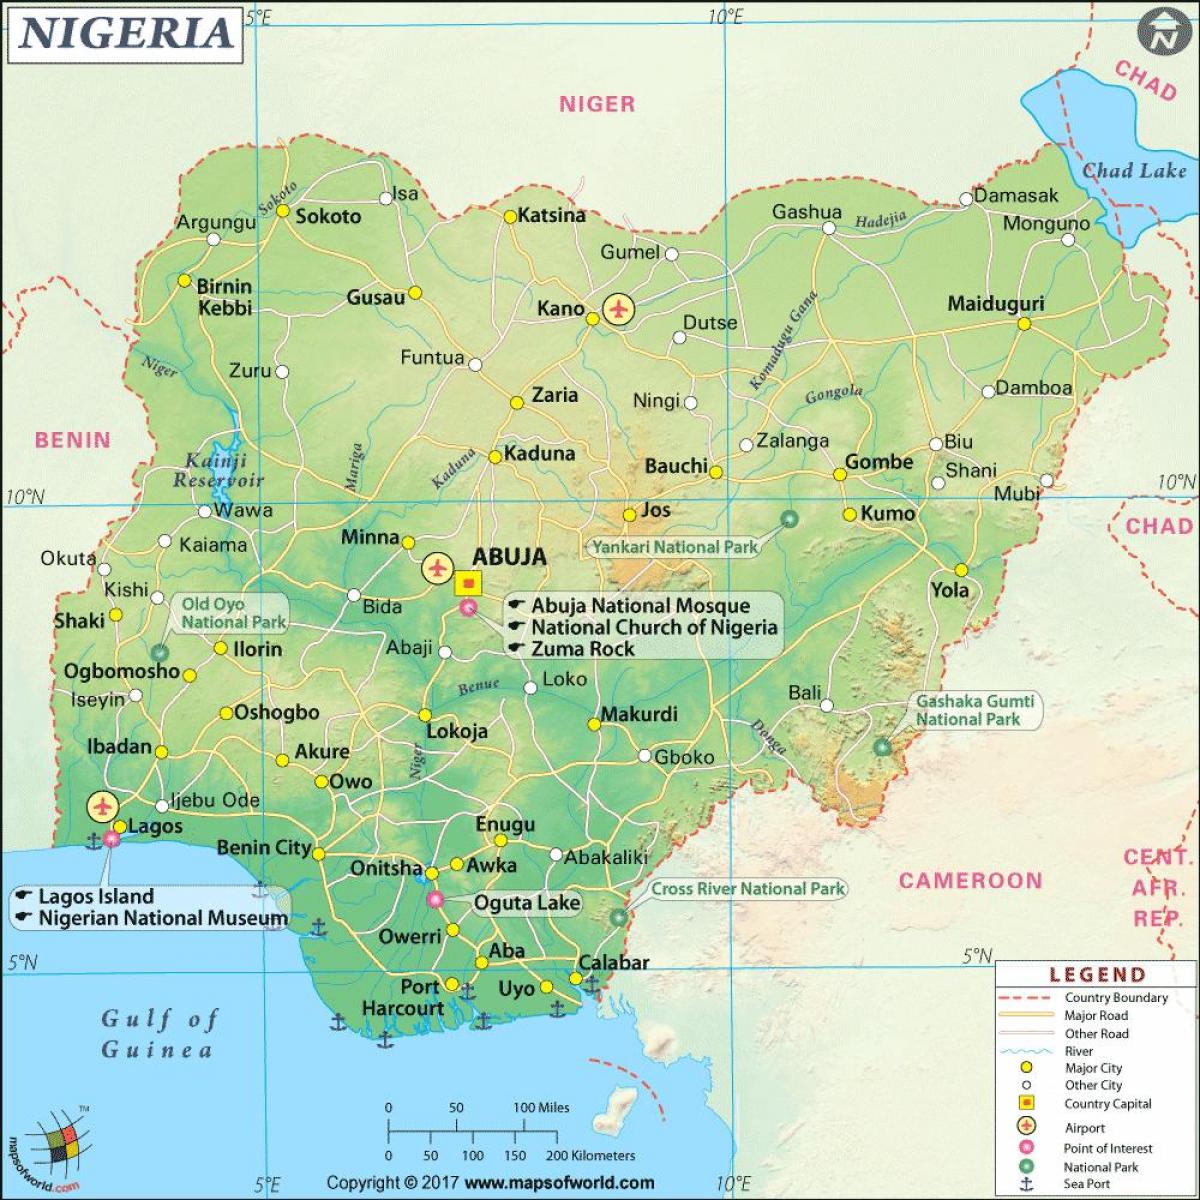 hình ảnh của nigeria bản đồ